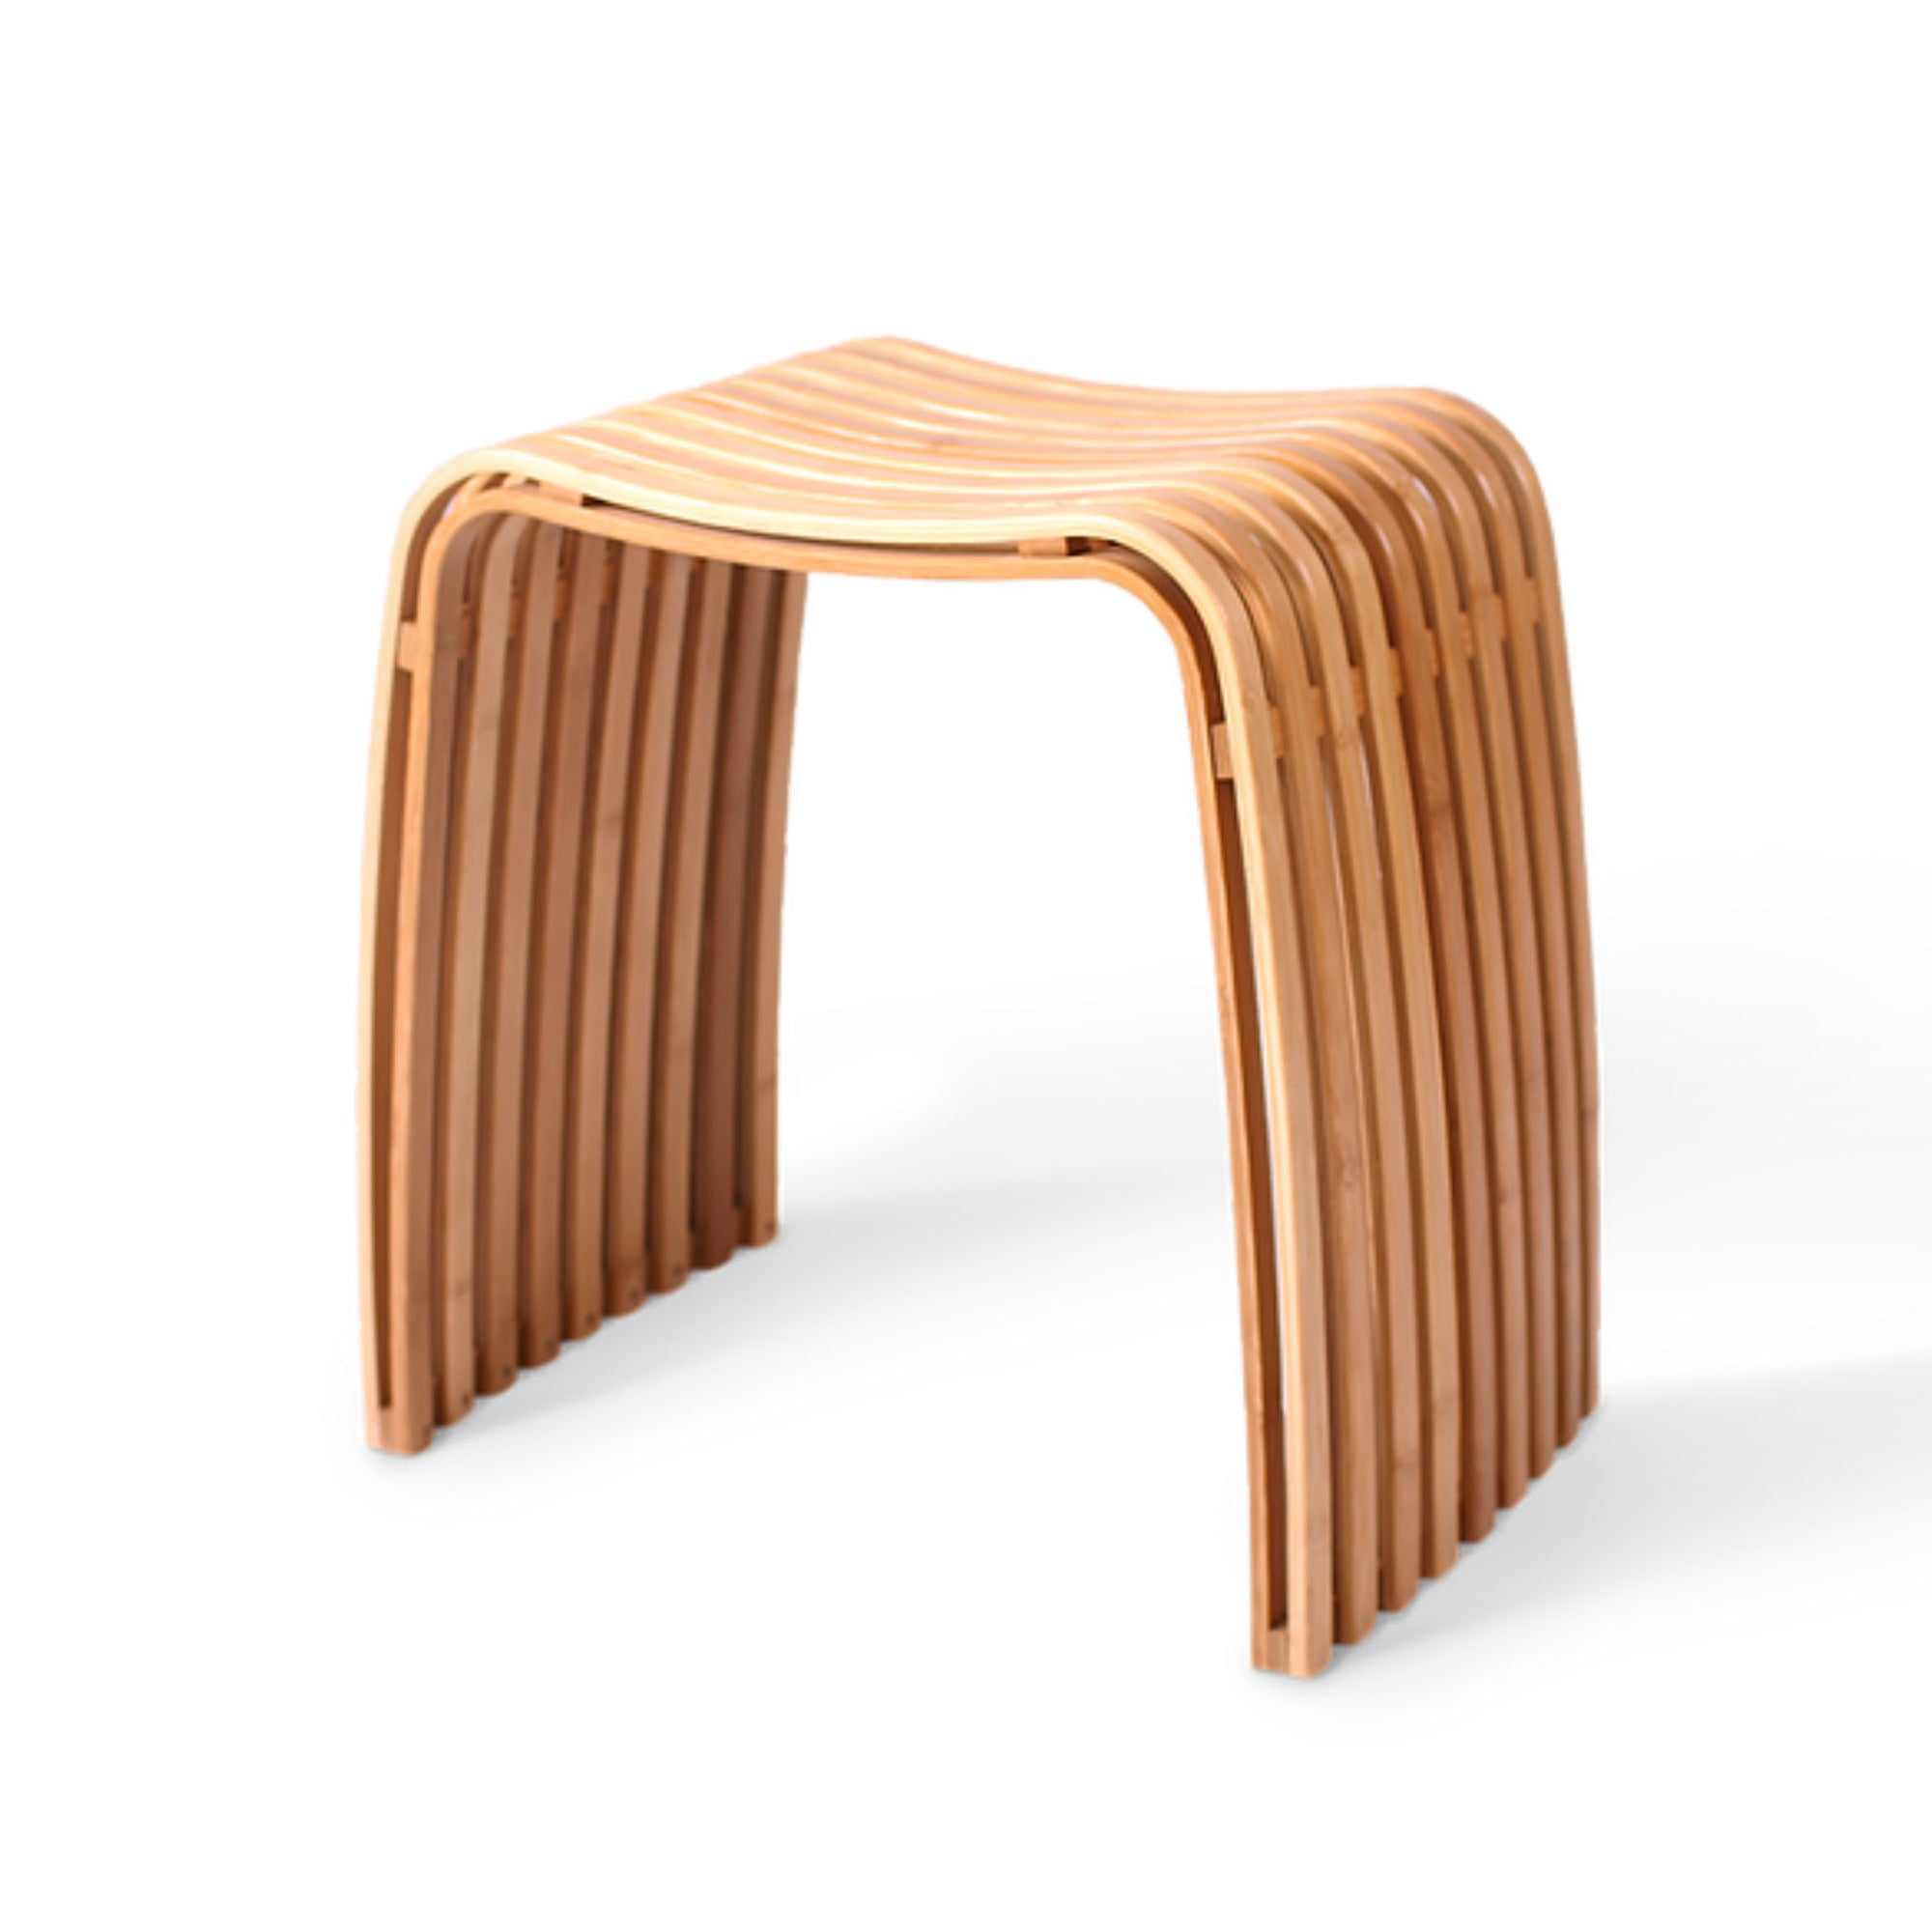 Gudee Colin bamboo stool, natural